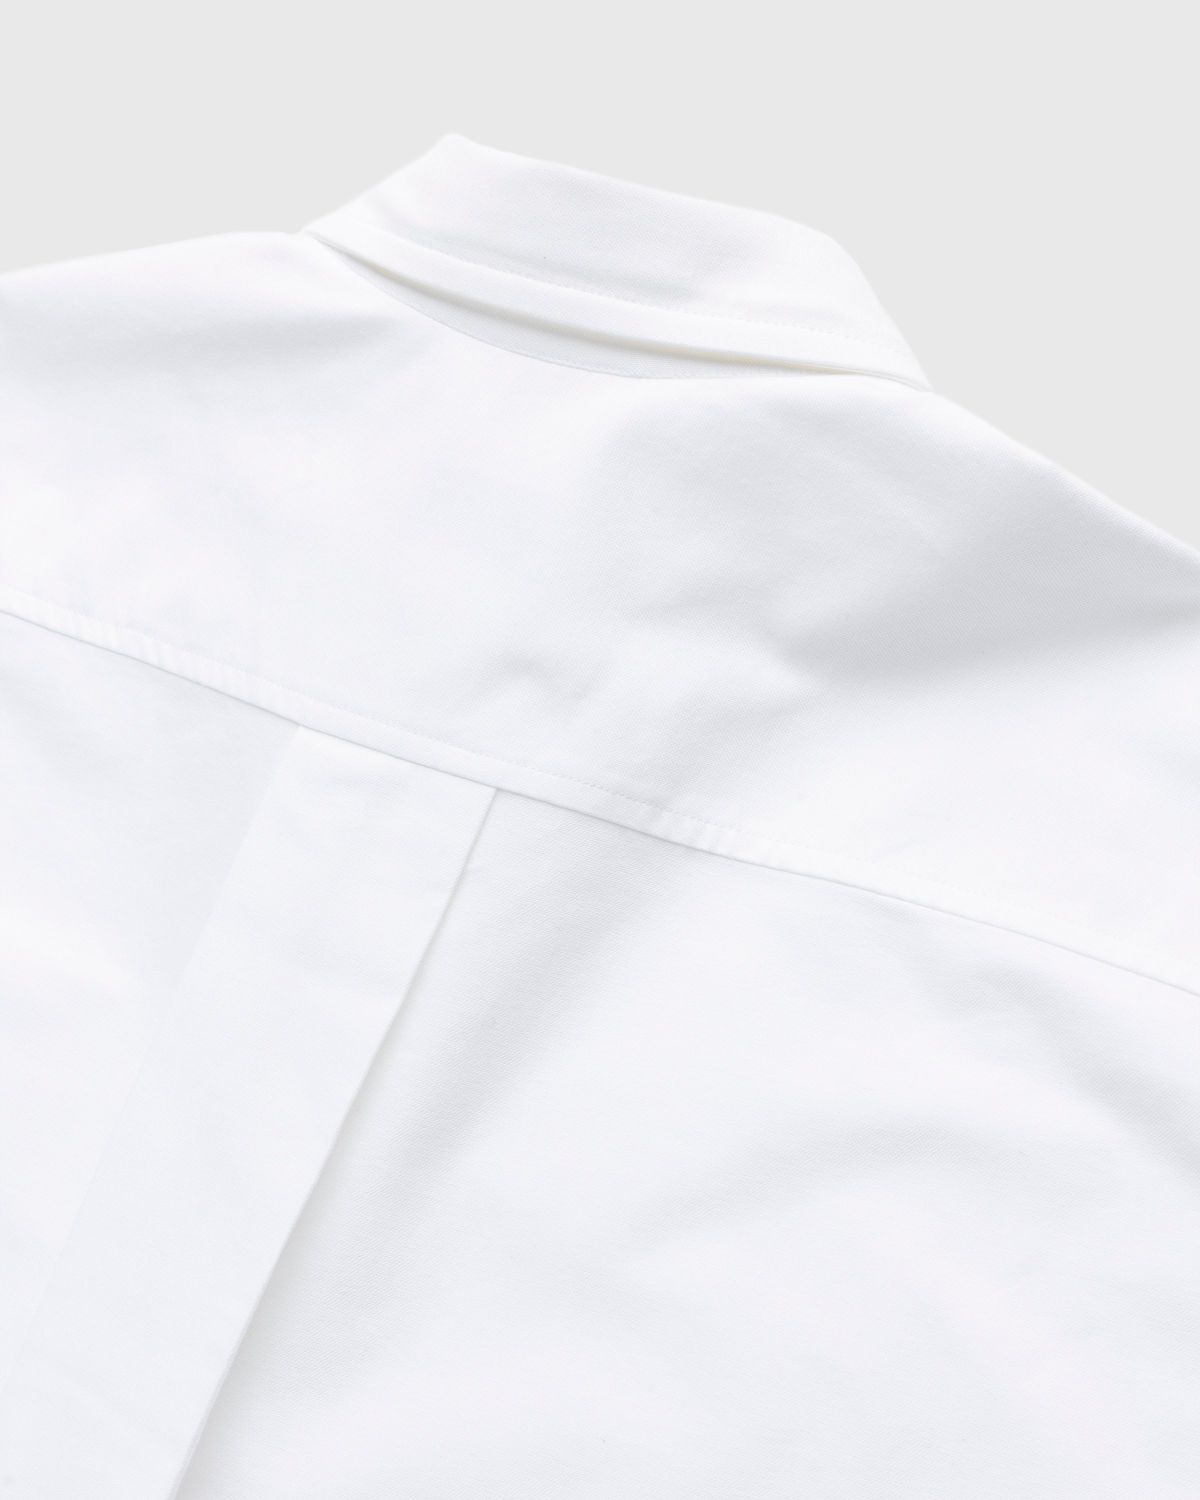 Kenzo – Boke Flower Crest Overshirt White - Longsleeve Shirts - White - Image 5